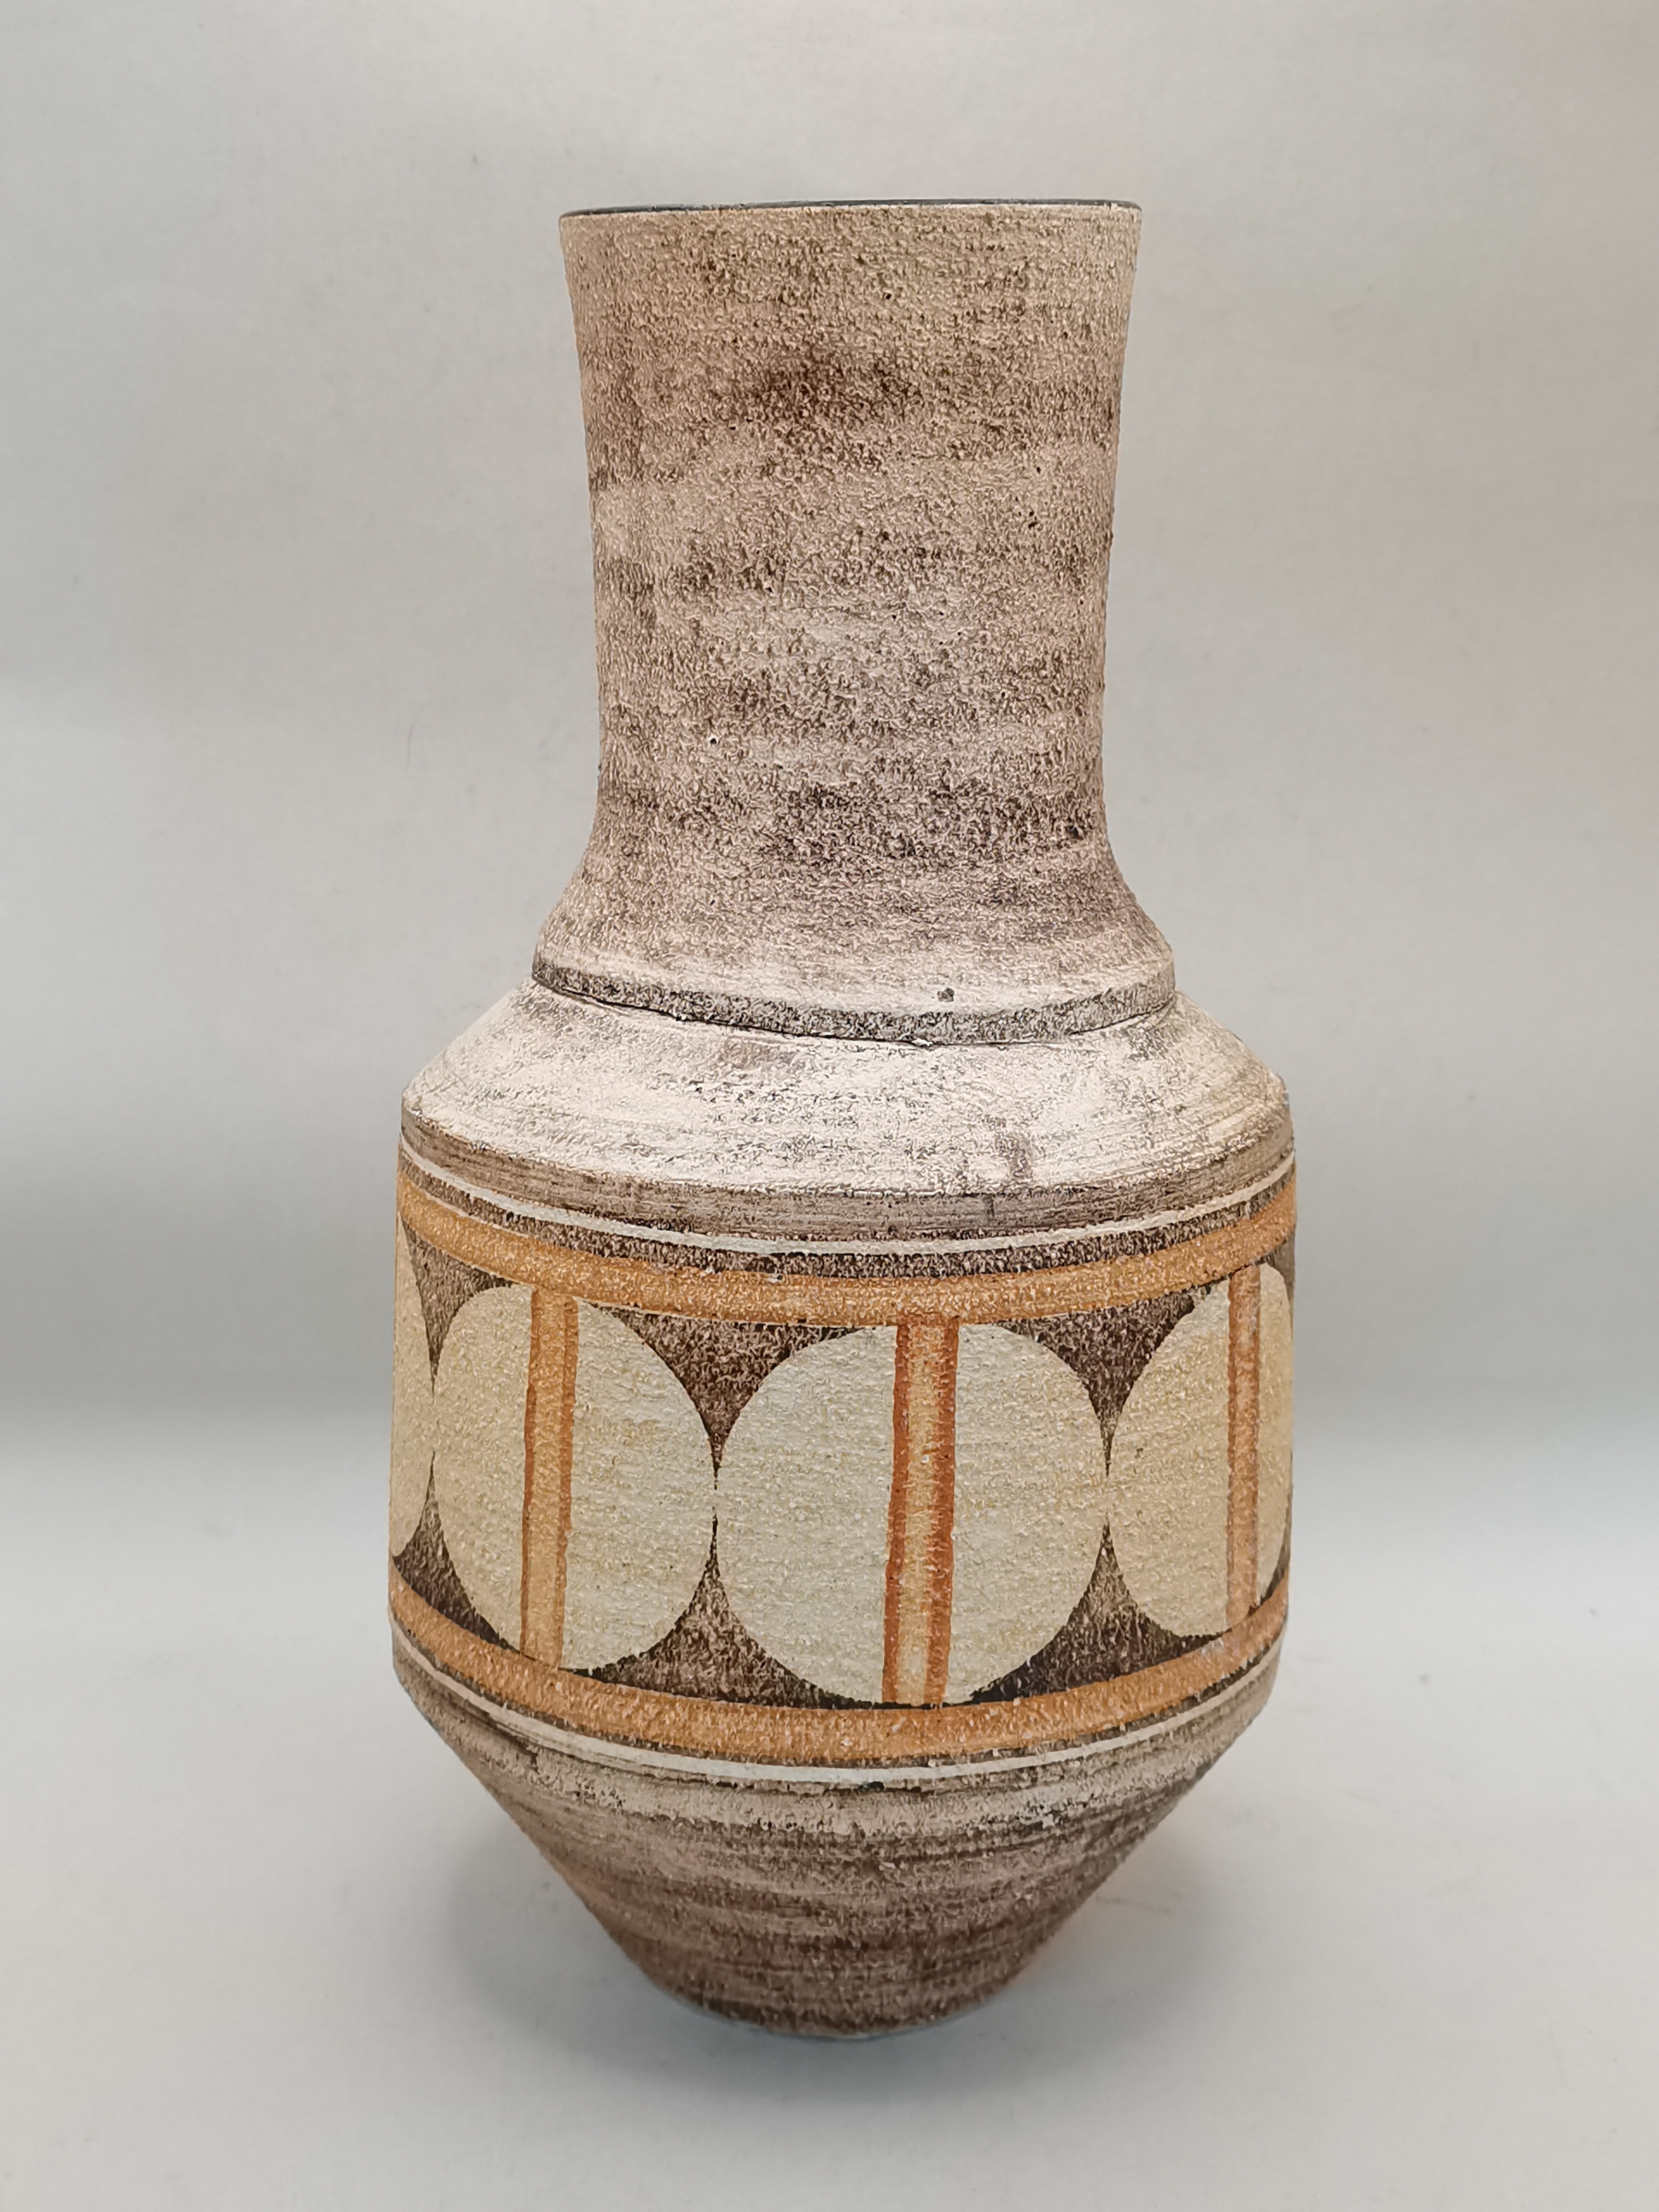 Troika Vase by Avril Bennett - 1973-1979